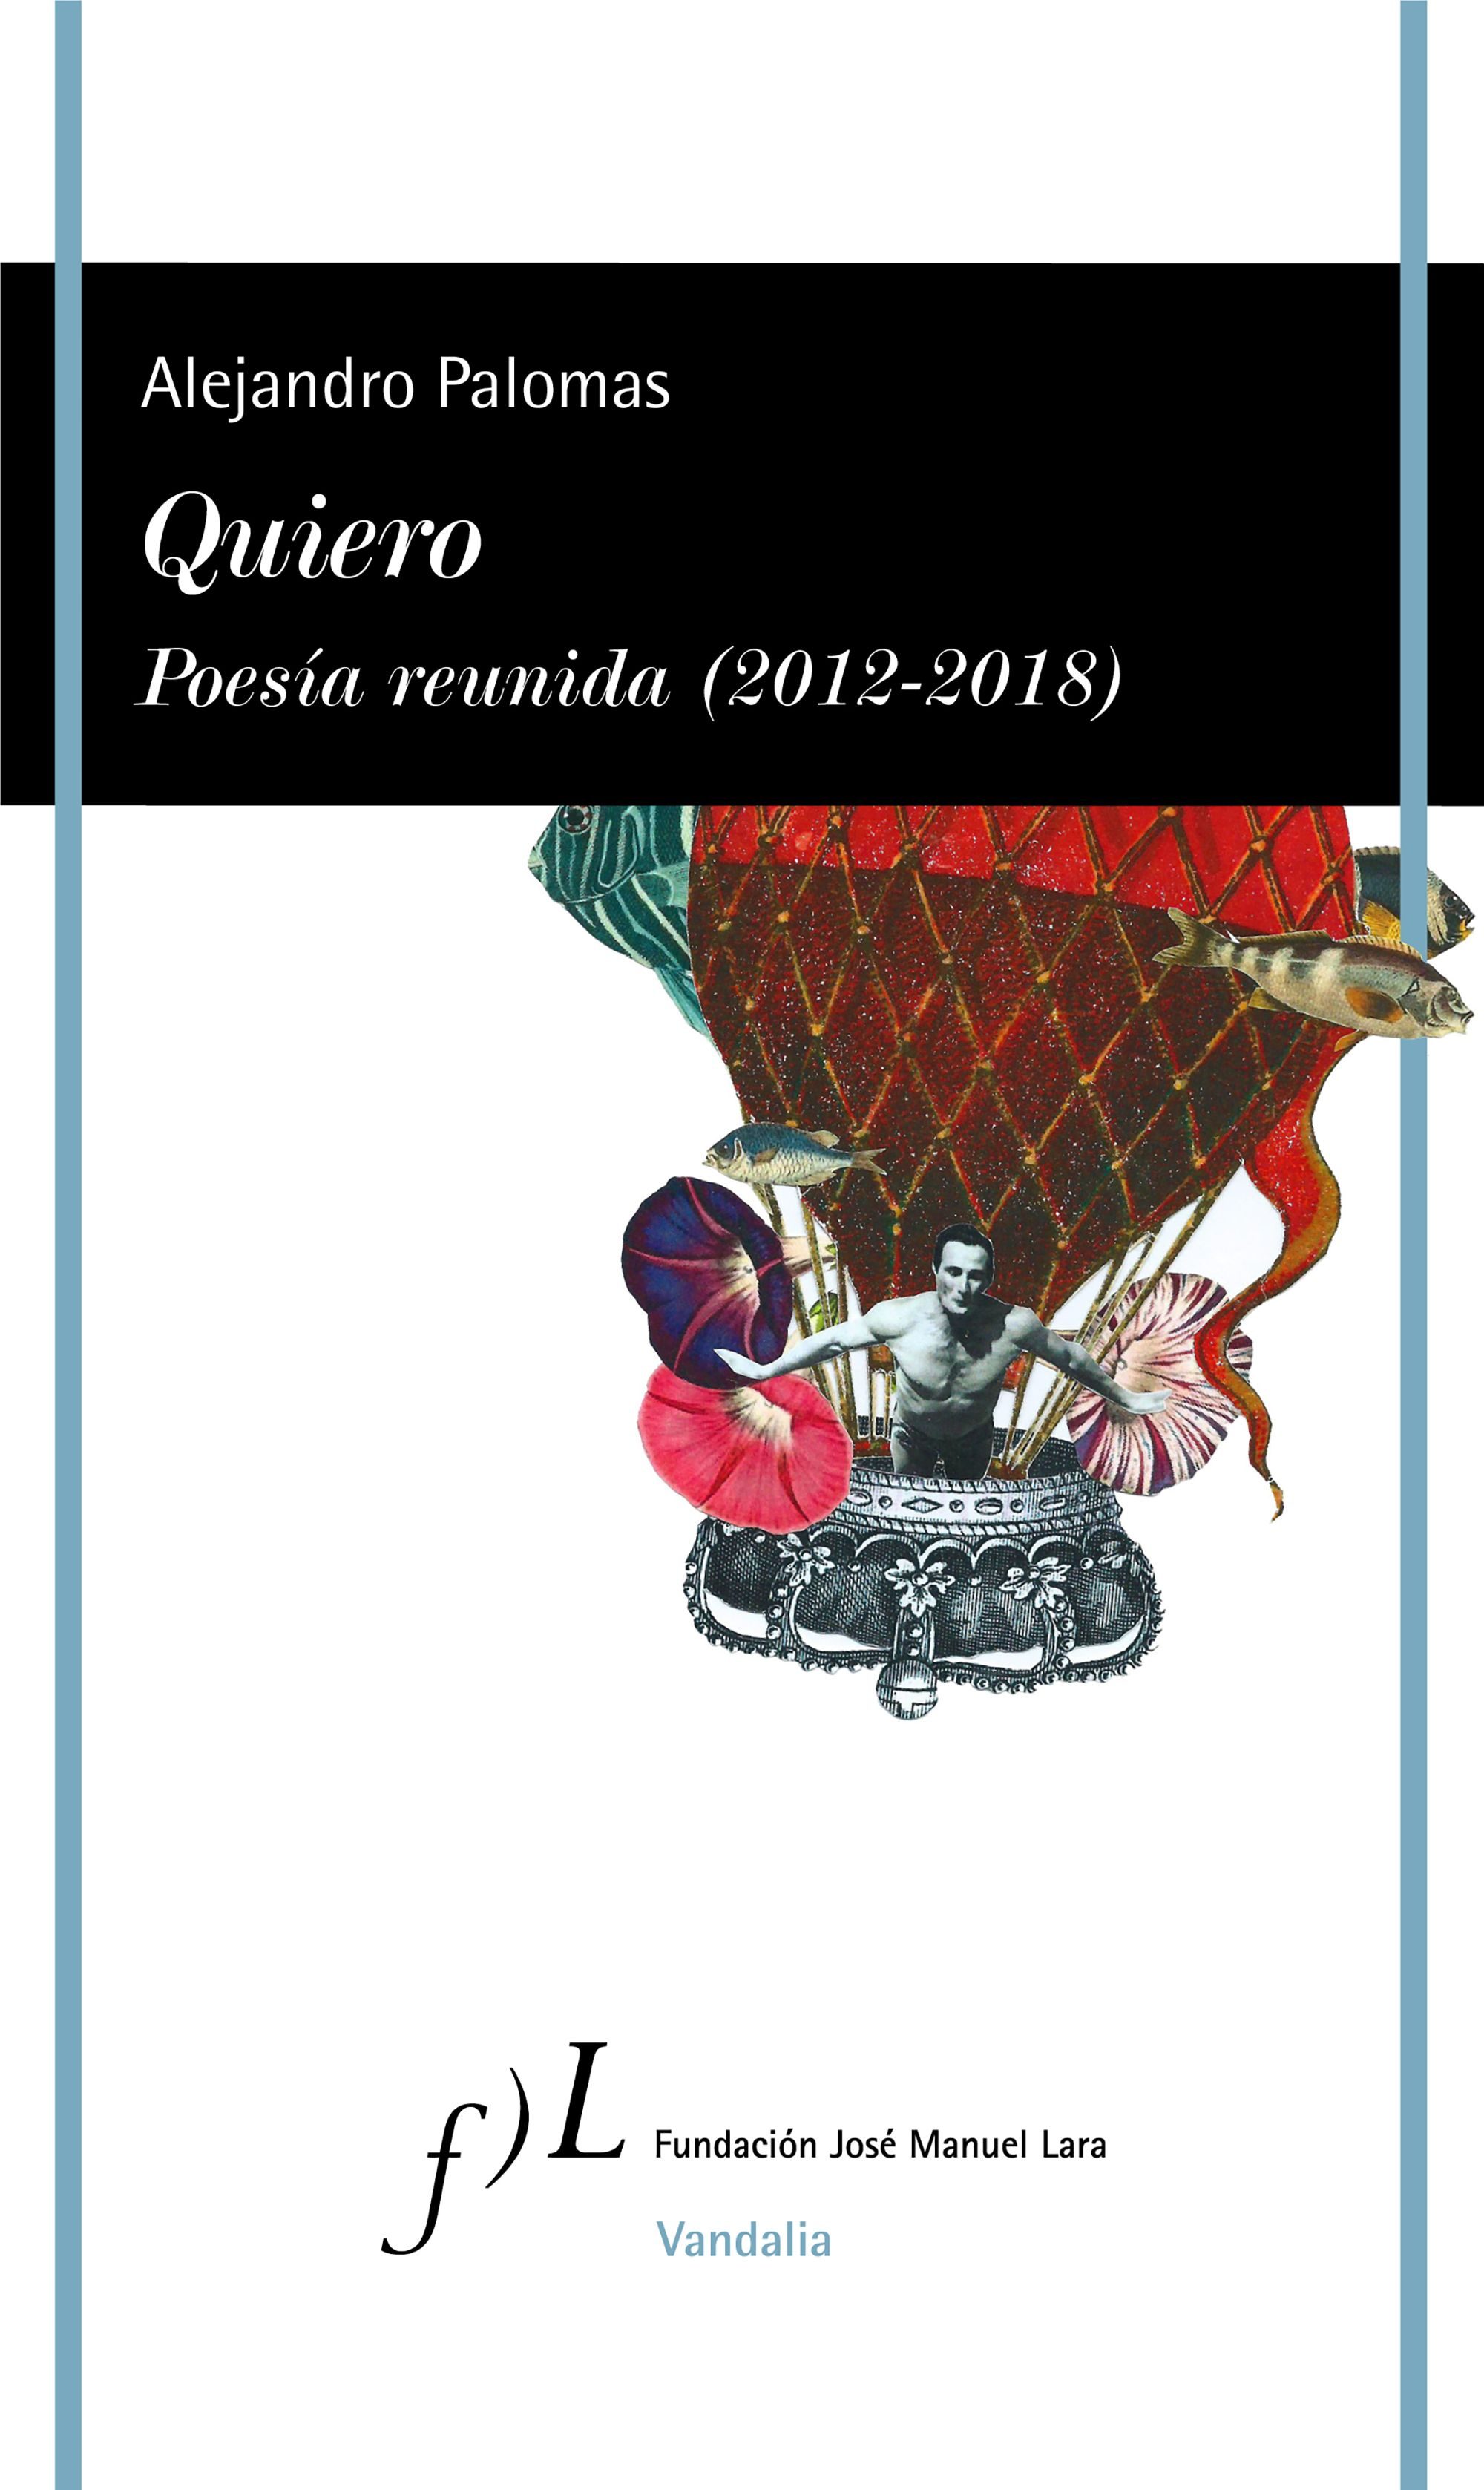 Quiero: Poesía reunida (2012-2018)